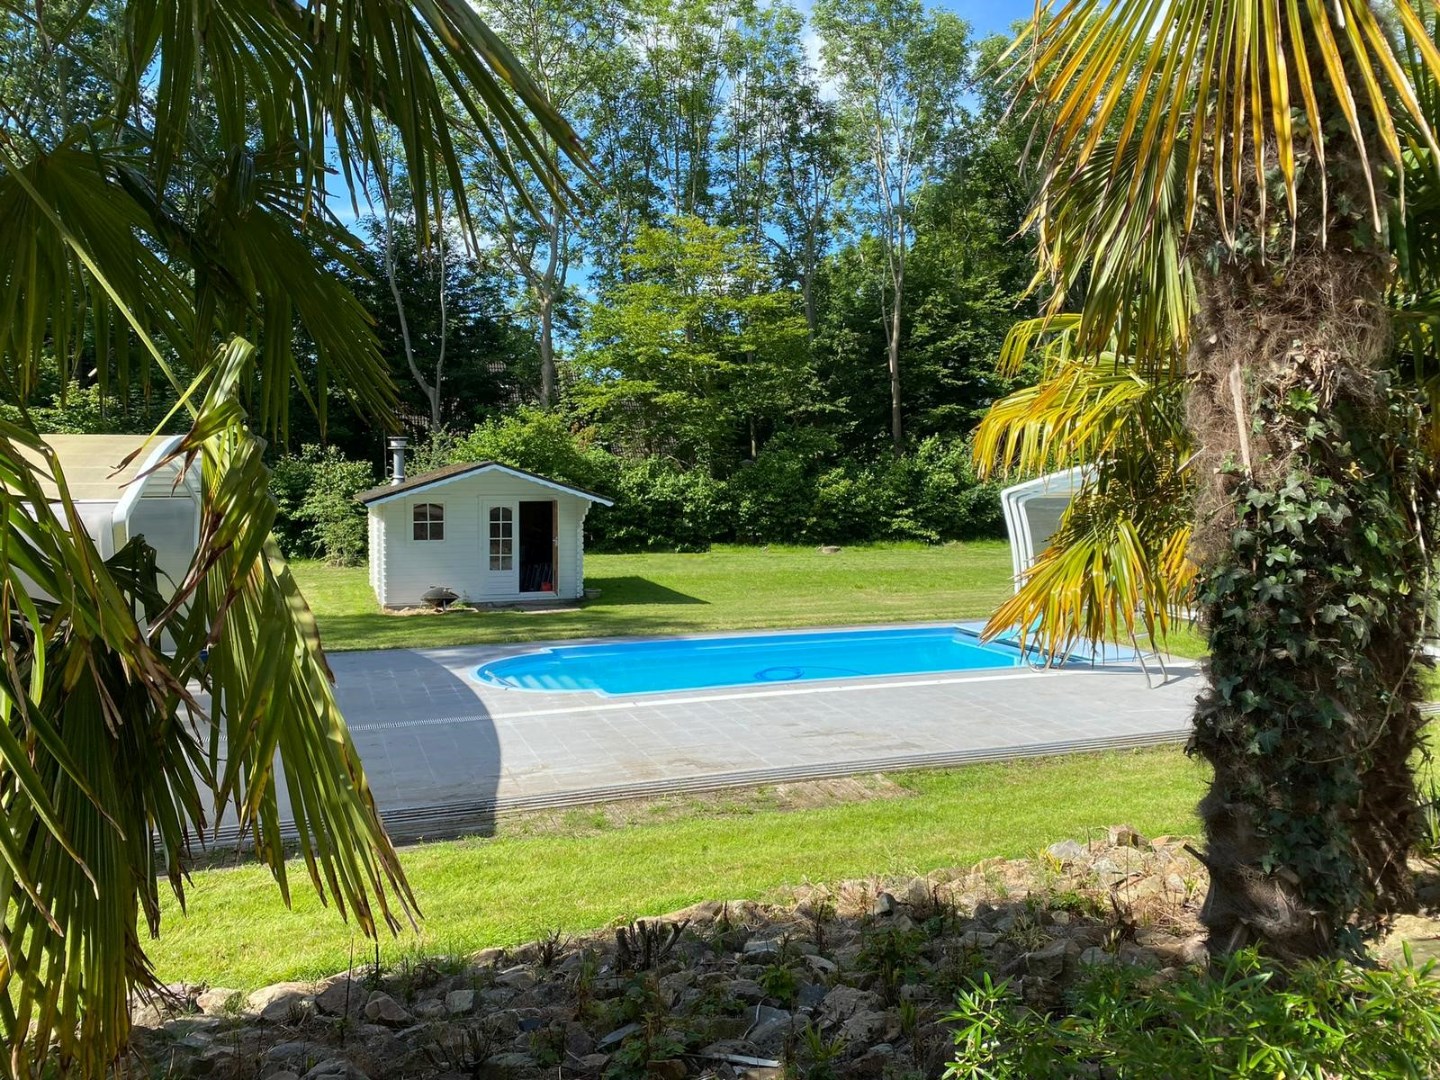 Charmante vrijstaande villa met dubbele garage, (evt. overdekt-) zwembad en royale private tuin rondom. 